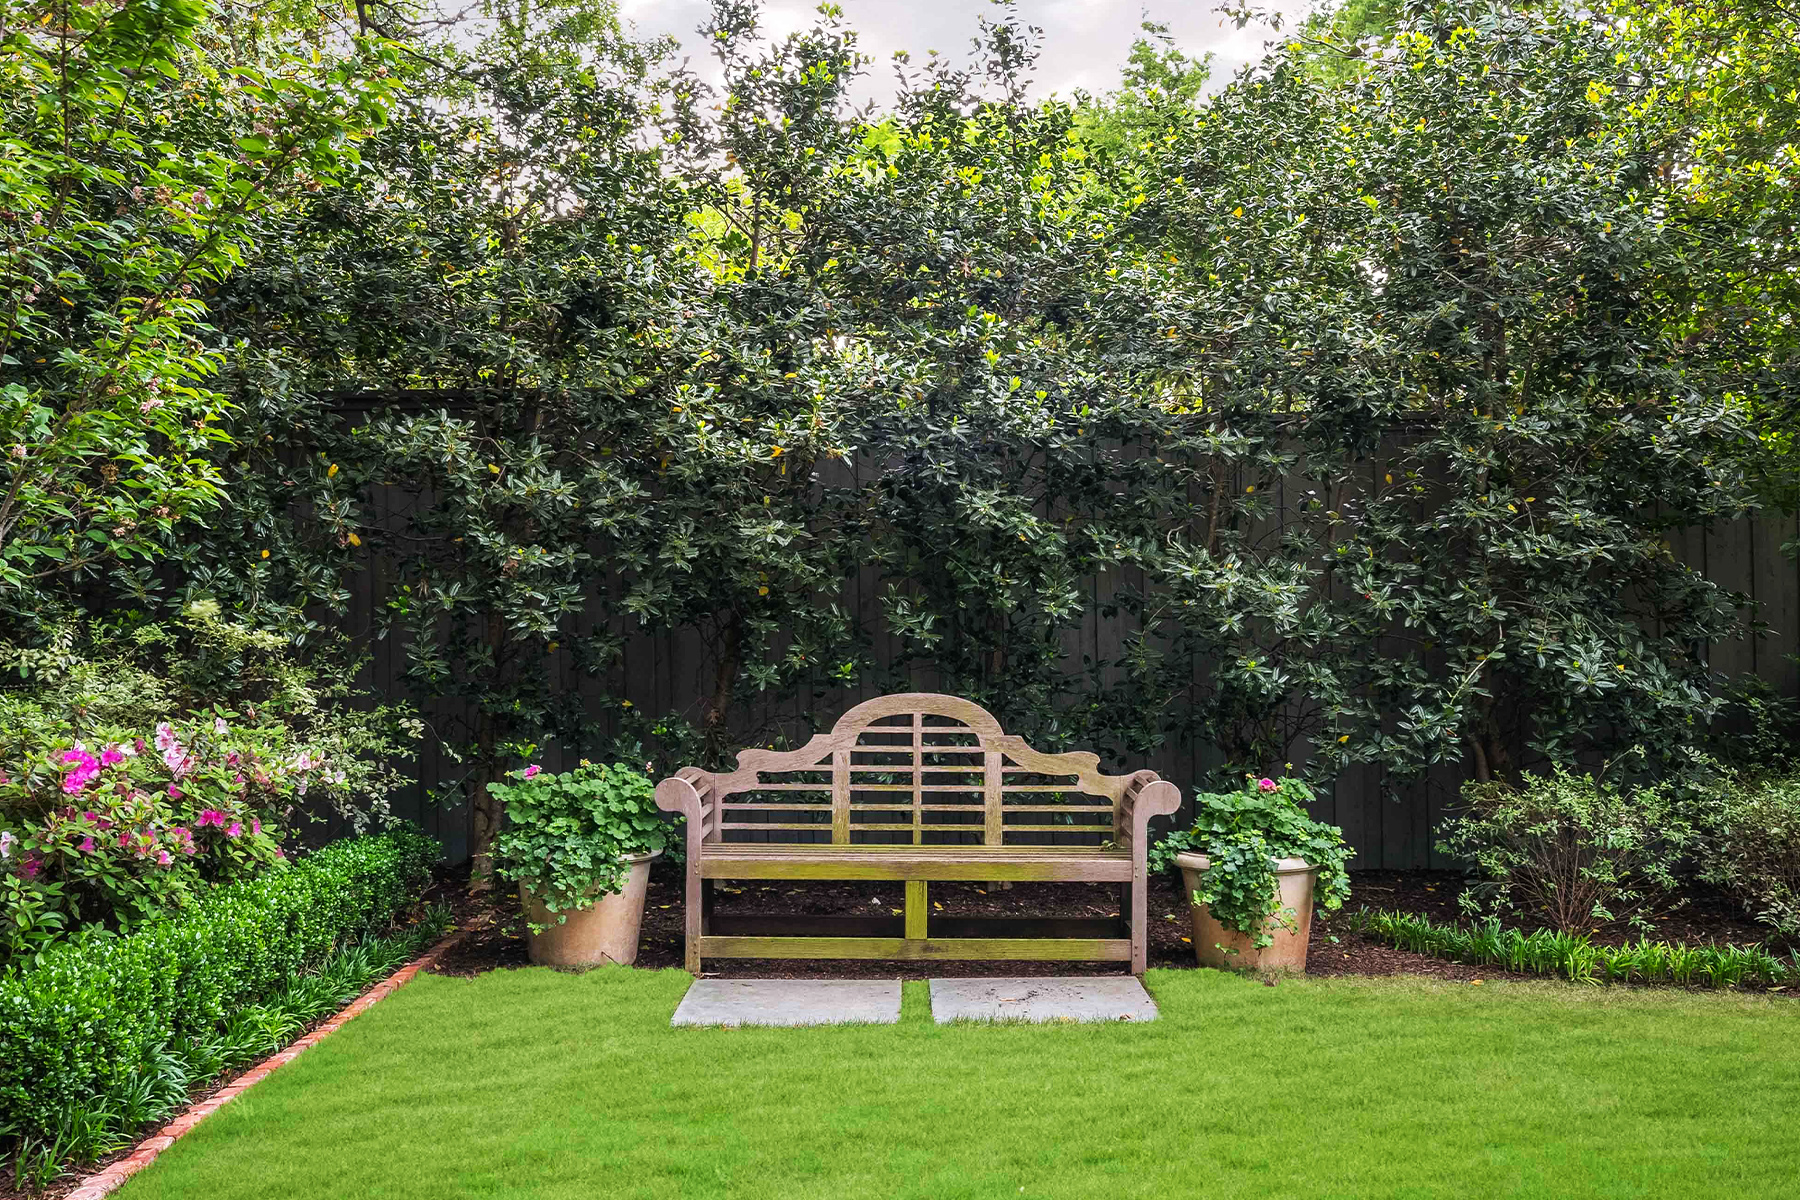 Bench located in Garden Yard